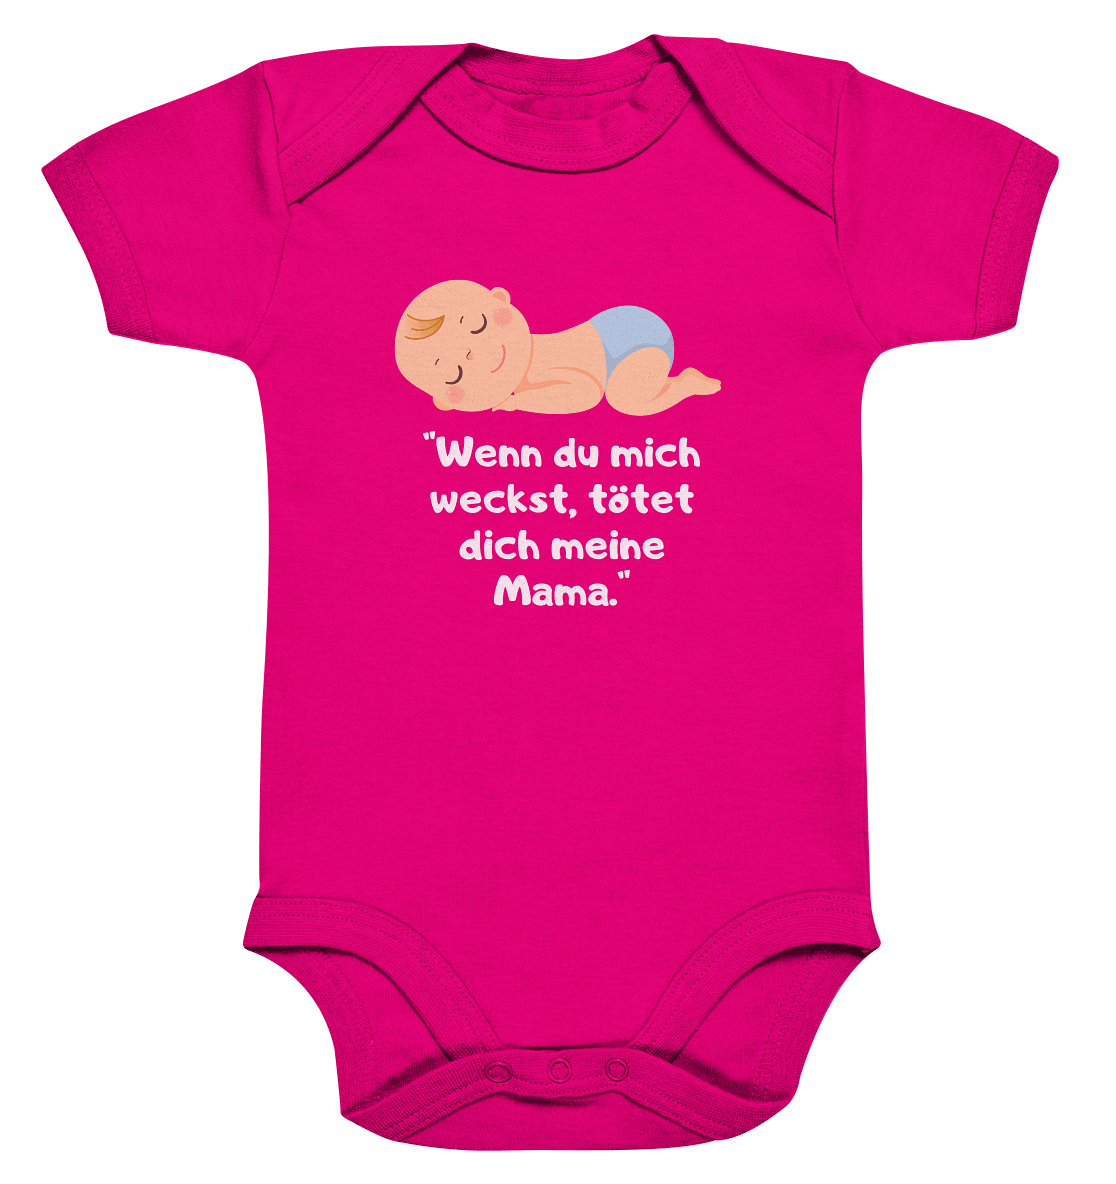 Wenn du mich weckst, tötet dich meine Mama - Organic Baby Bodysuite - Snapshirts